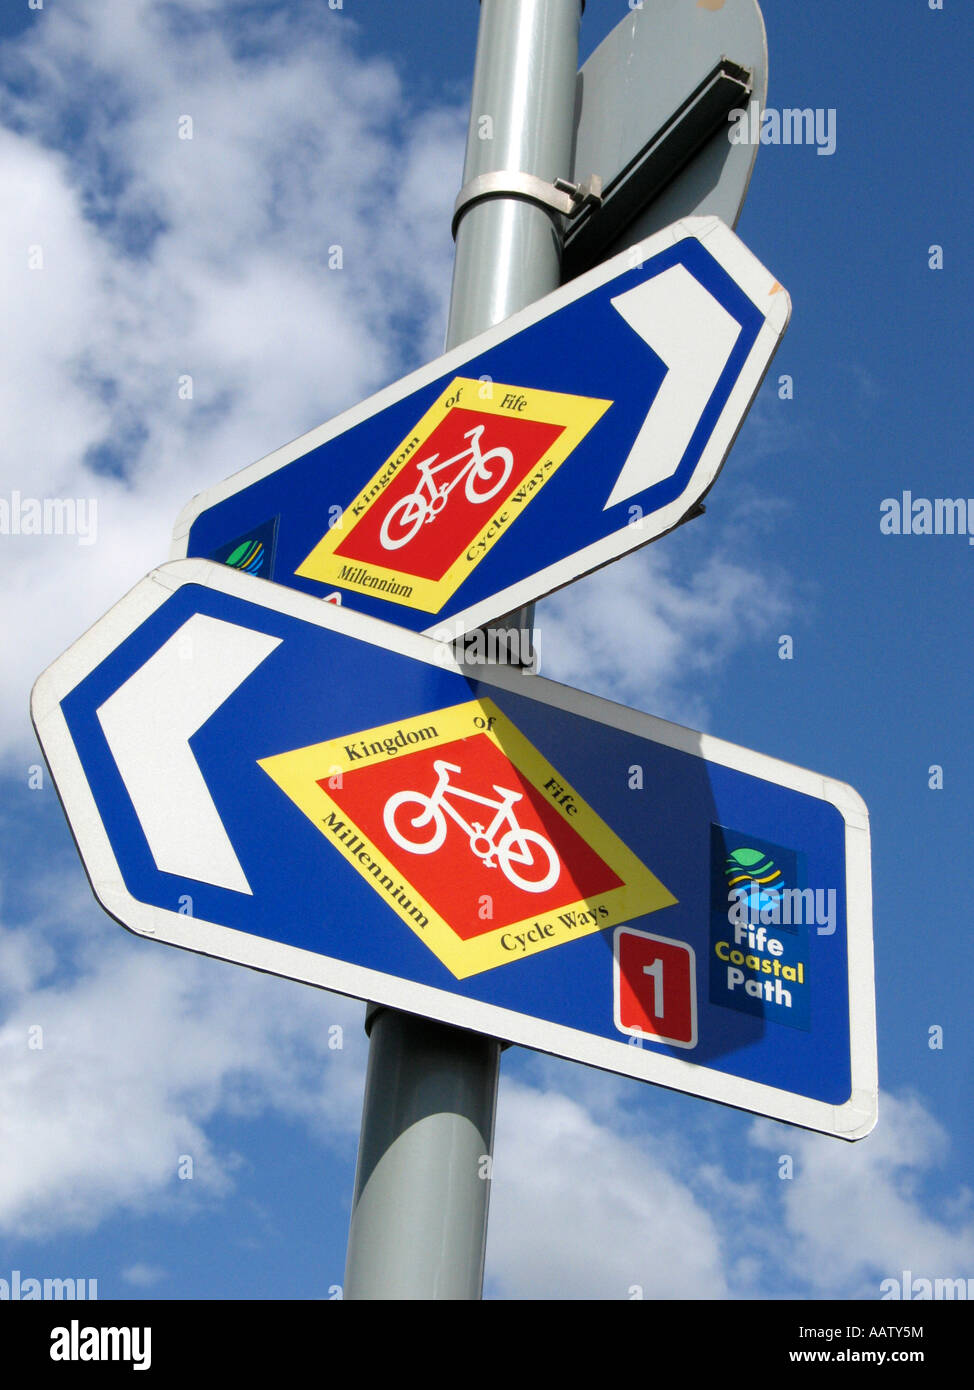 Indikator für das Königreich von Fife Millennium Fahrradweg und Fife Coastal Path unterzeichnet Stockfoto